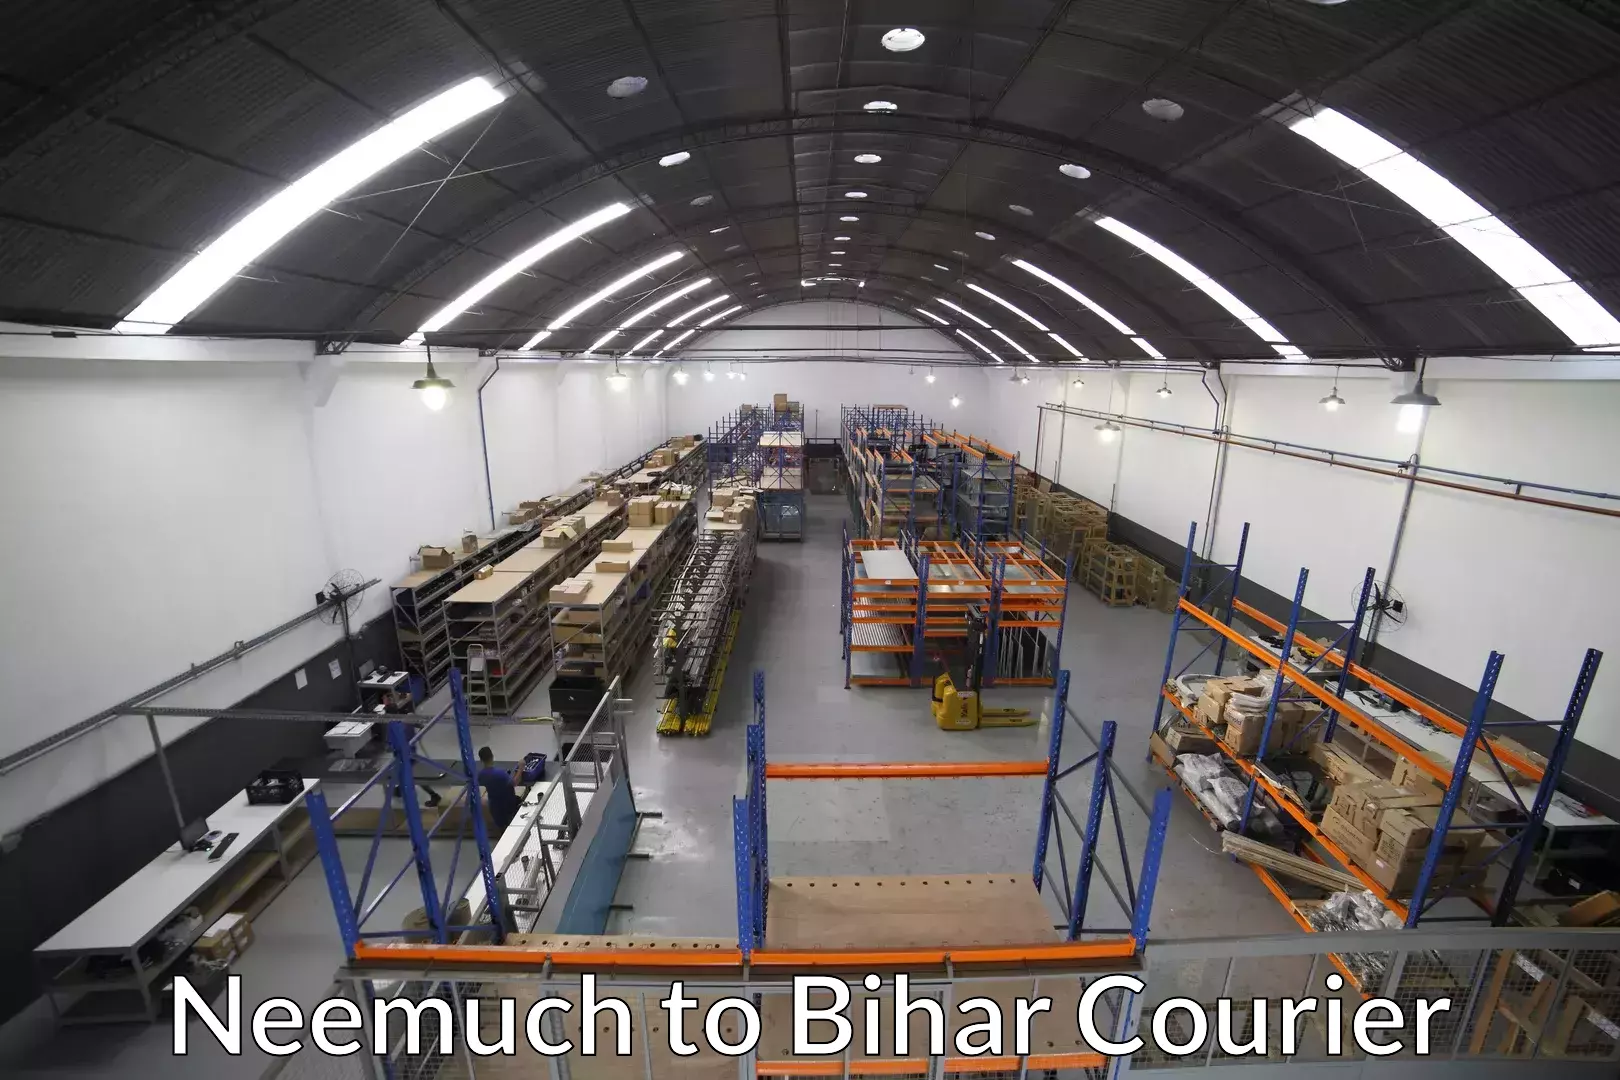 Furniture transport specialists Neemuch to Bharwara